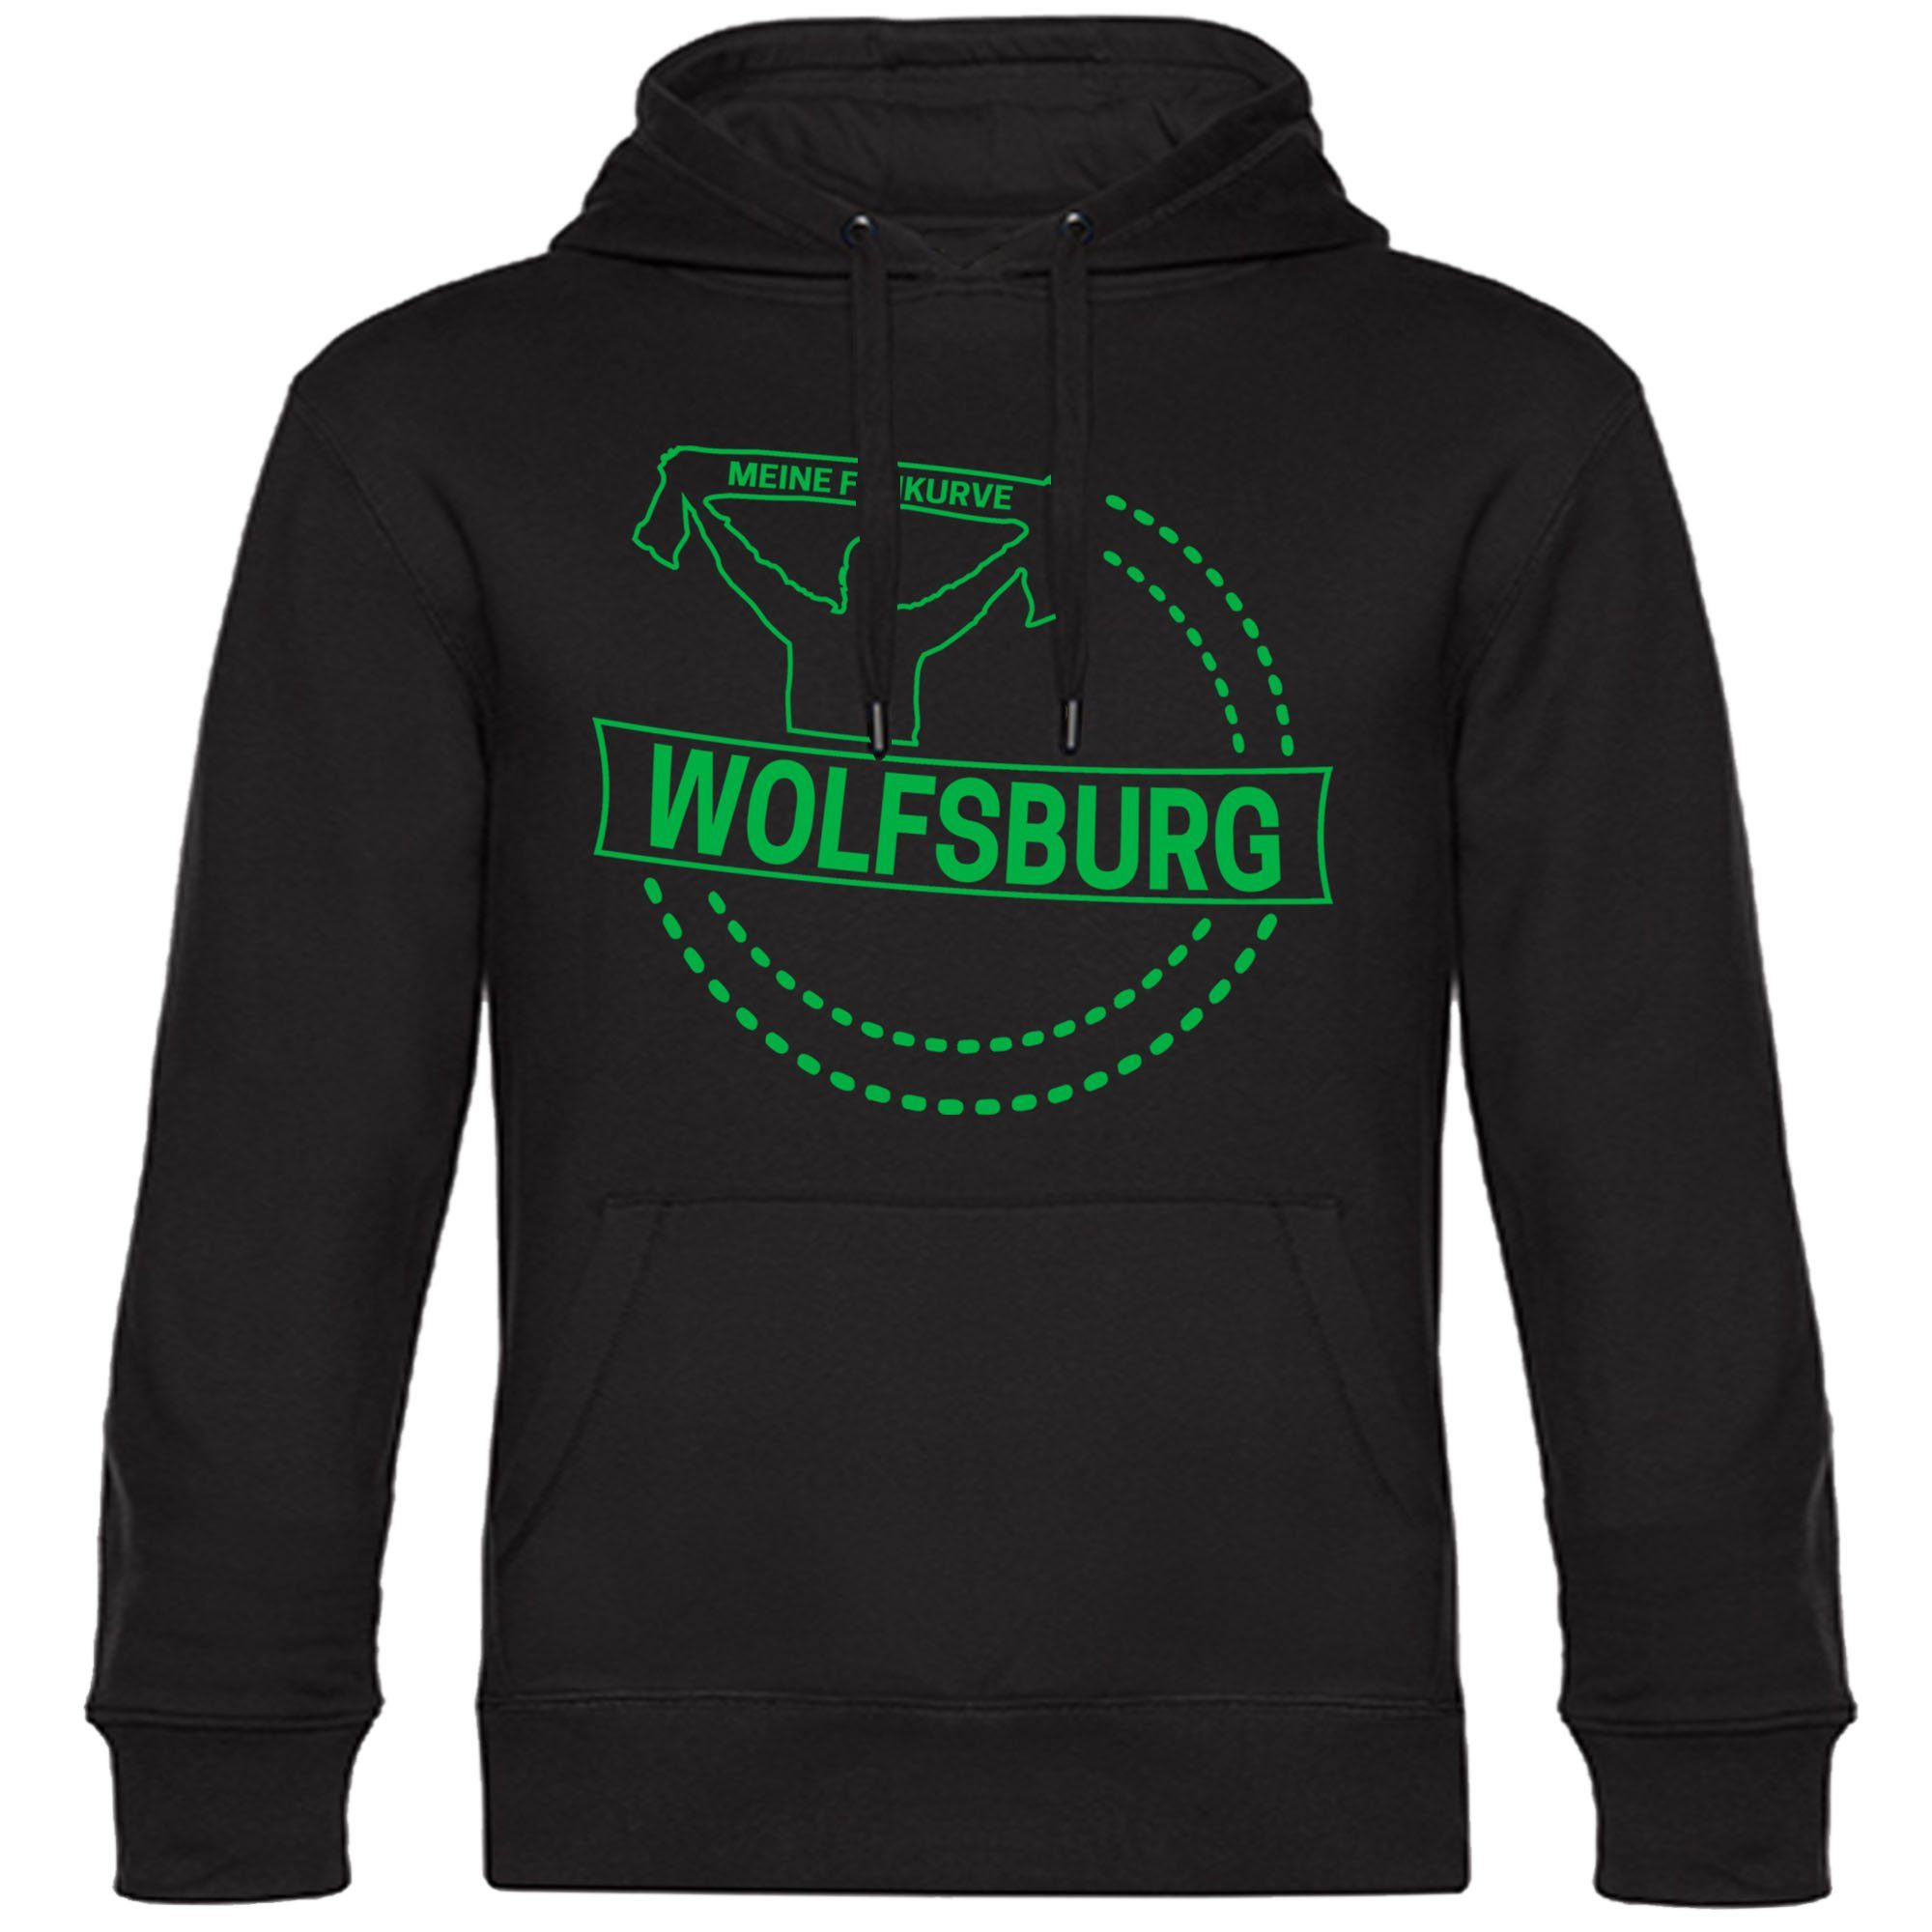 multifanshop Kapuzensweatshirt Wolfsburg - Meine Fankurve - Pullover